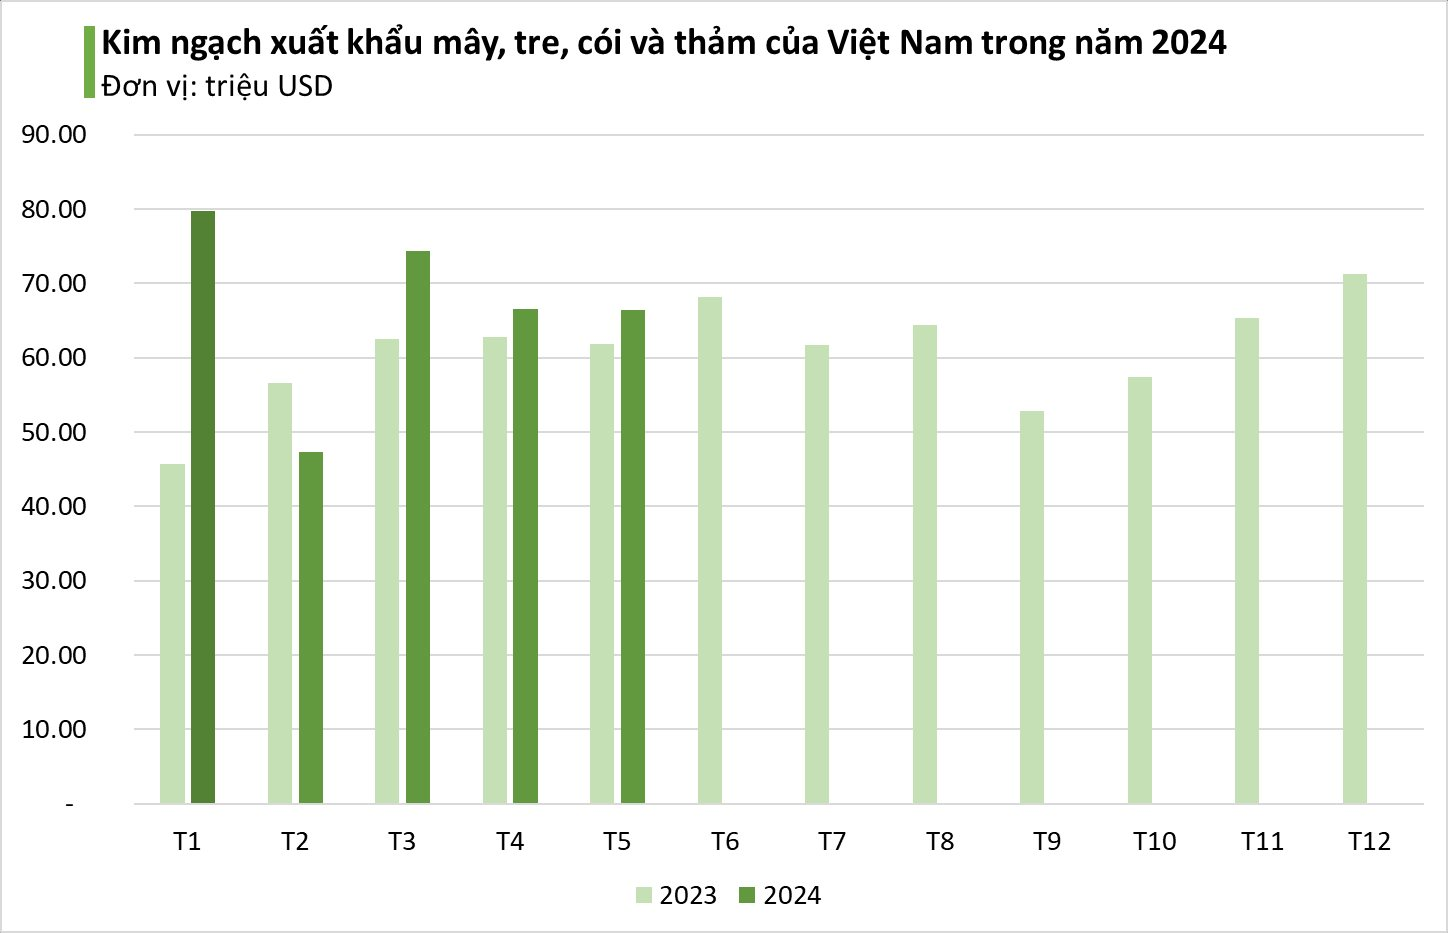 Ngành hàng là niềm tự hào của người Việt: Đại gia Mỹ, Nhật Bản cực ưa chuộng, thu trăm triệu USD, Việt Nam sắp chiếm 15% thị phần toàn cầu- Ảnh 1.